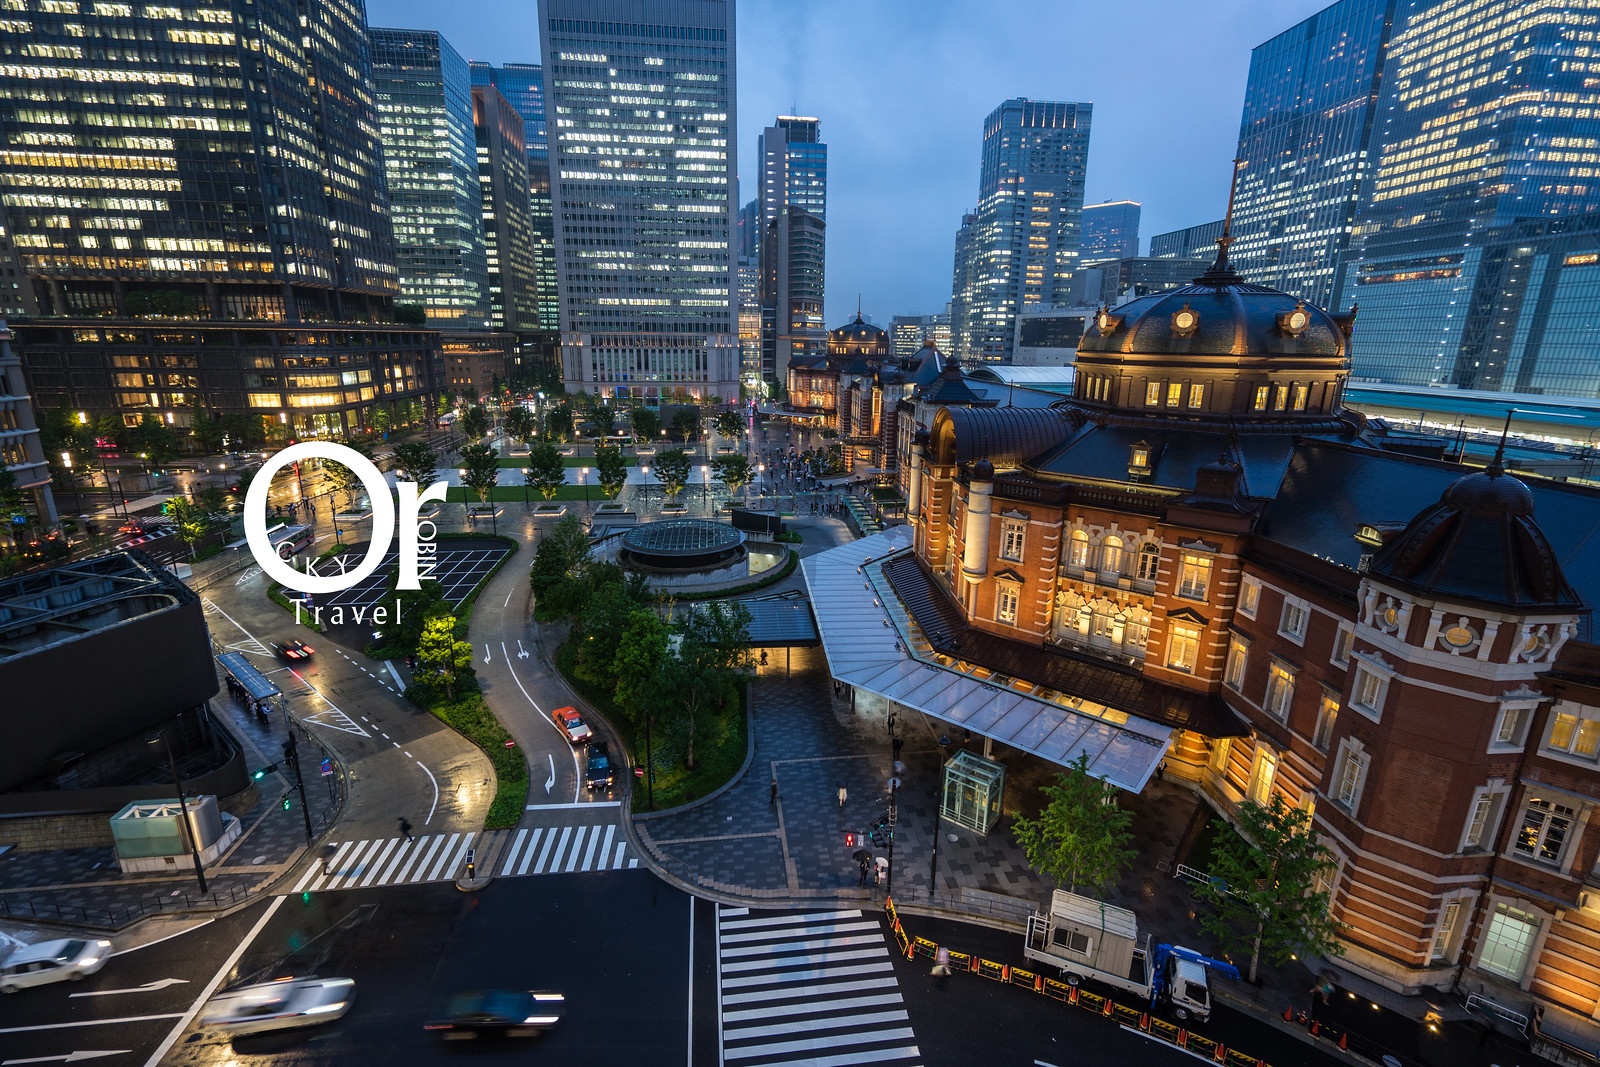 東京夜景 東京車站夜景免費攝影景點不能錯過 從kitte 購物中心欣賞東京車站夜景 欣賞新幹線車來車往 羅賓的攝影漫步